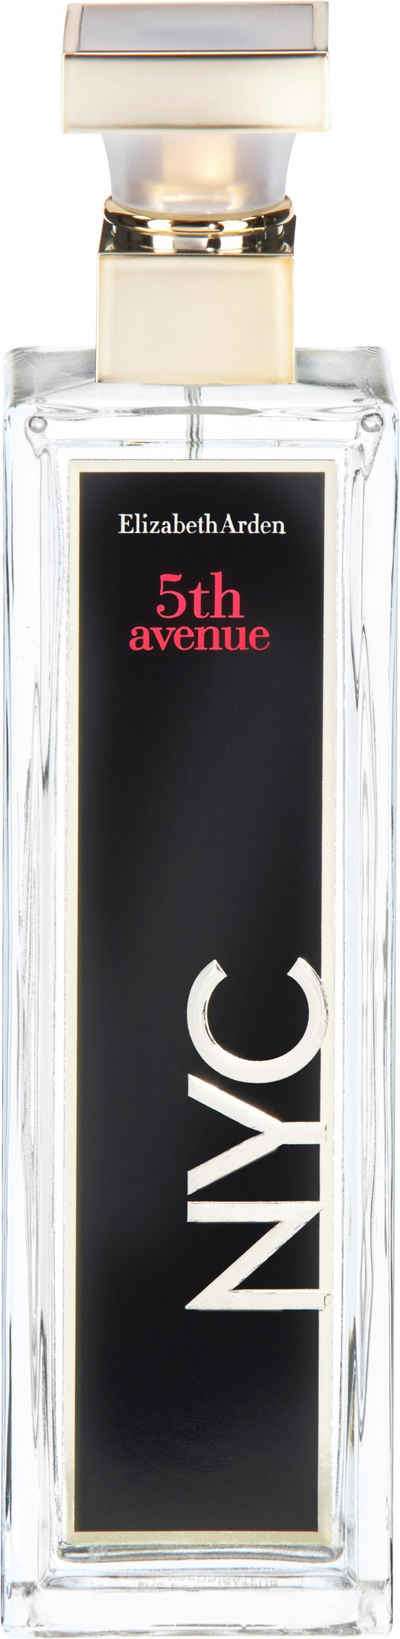 Elizabeth Arden Eau de Parfum 5th Avenue NYC